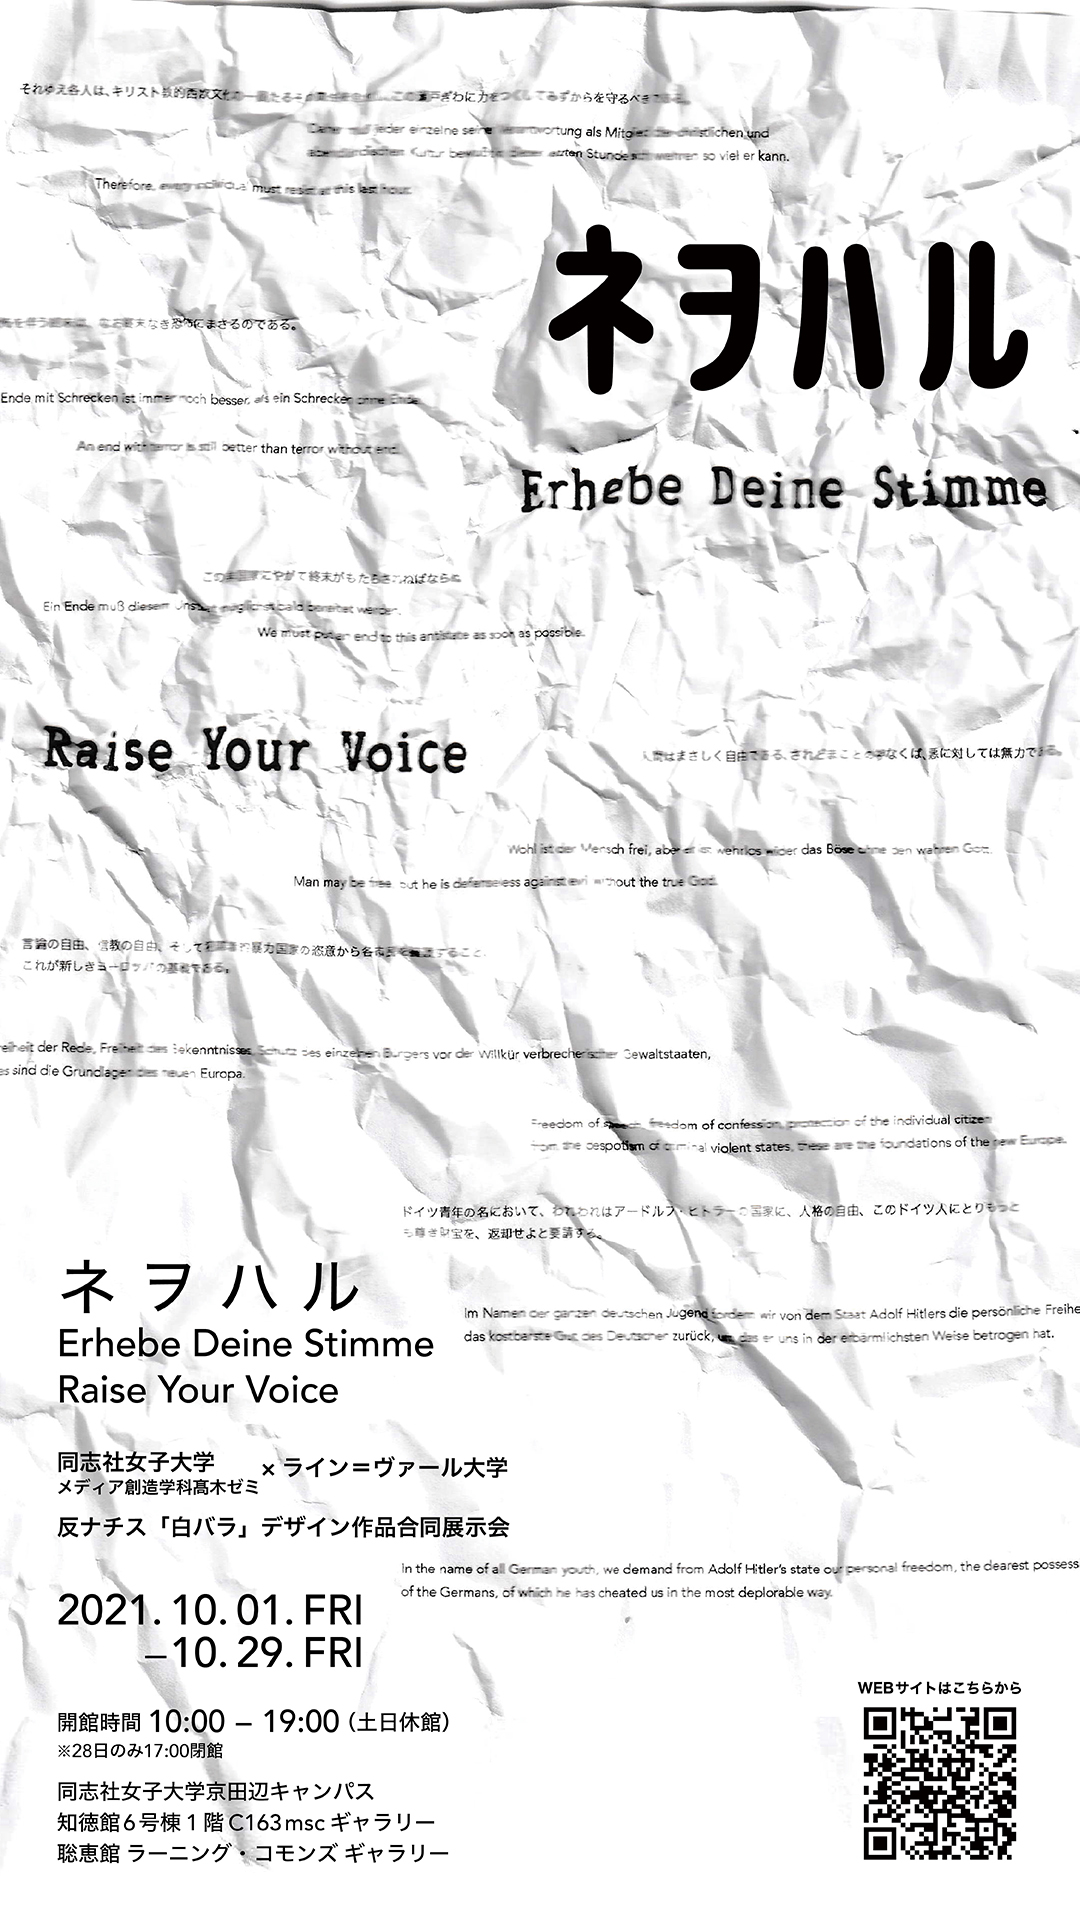 「ネヲハル / Erhebe Deine Stimme / Raise Your Voice」同志社女子大学×ライン=ヴァール大学共同展示会